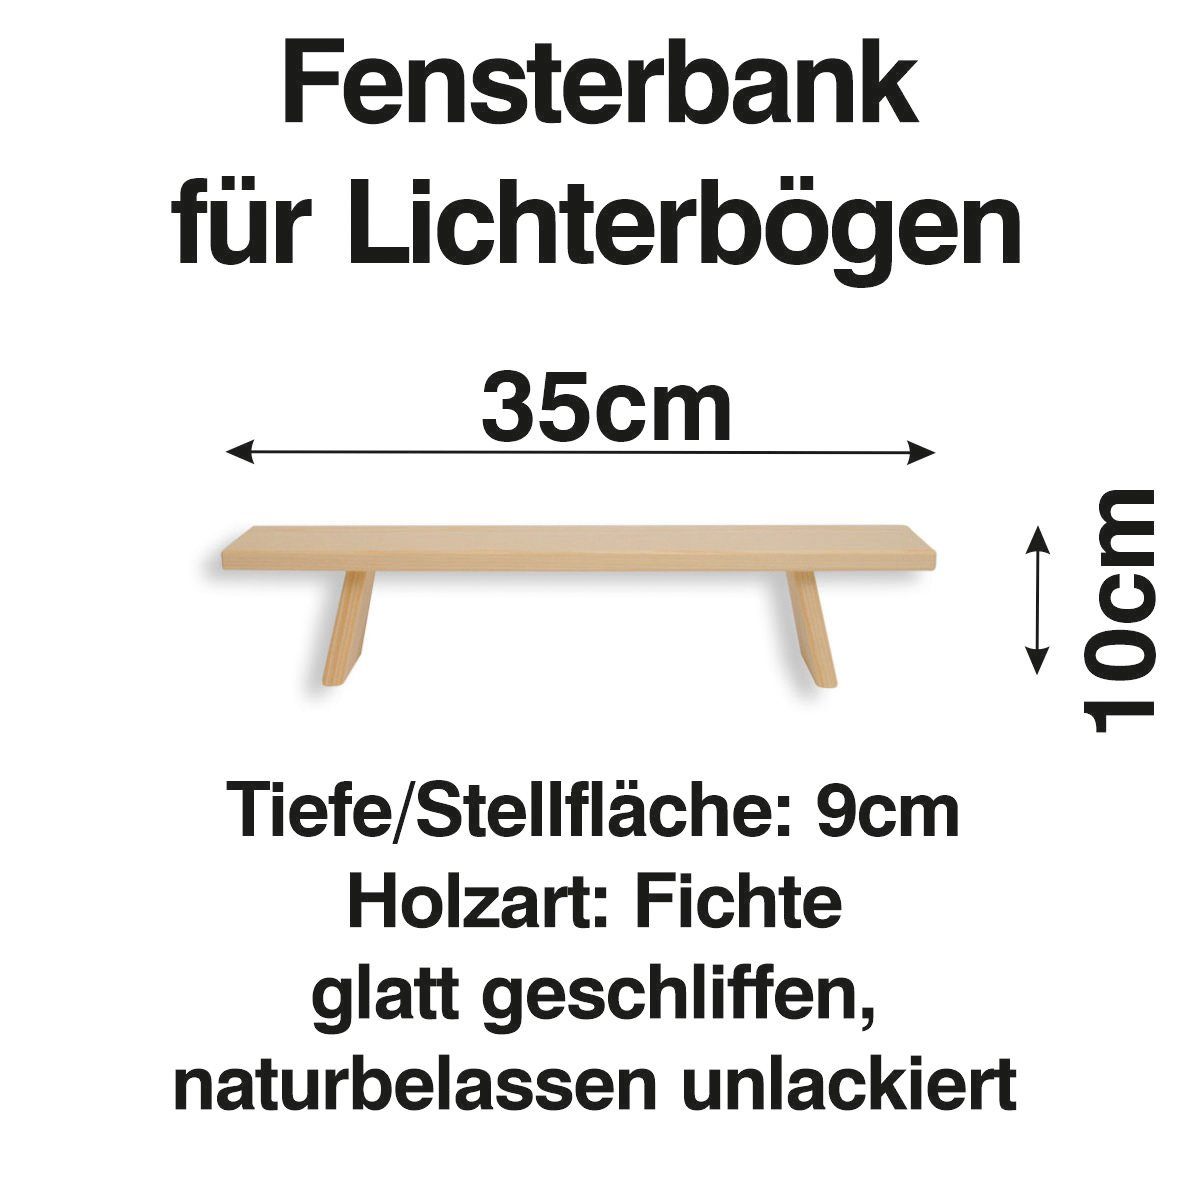 Schenk Holzkunst Schwibbogen-Fensterbank Schwibbogen Erhöhung cm Fenst Bank Lichterbogen 35